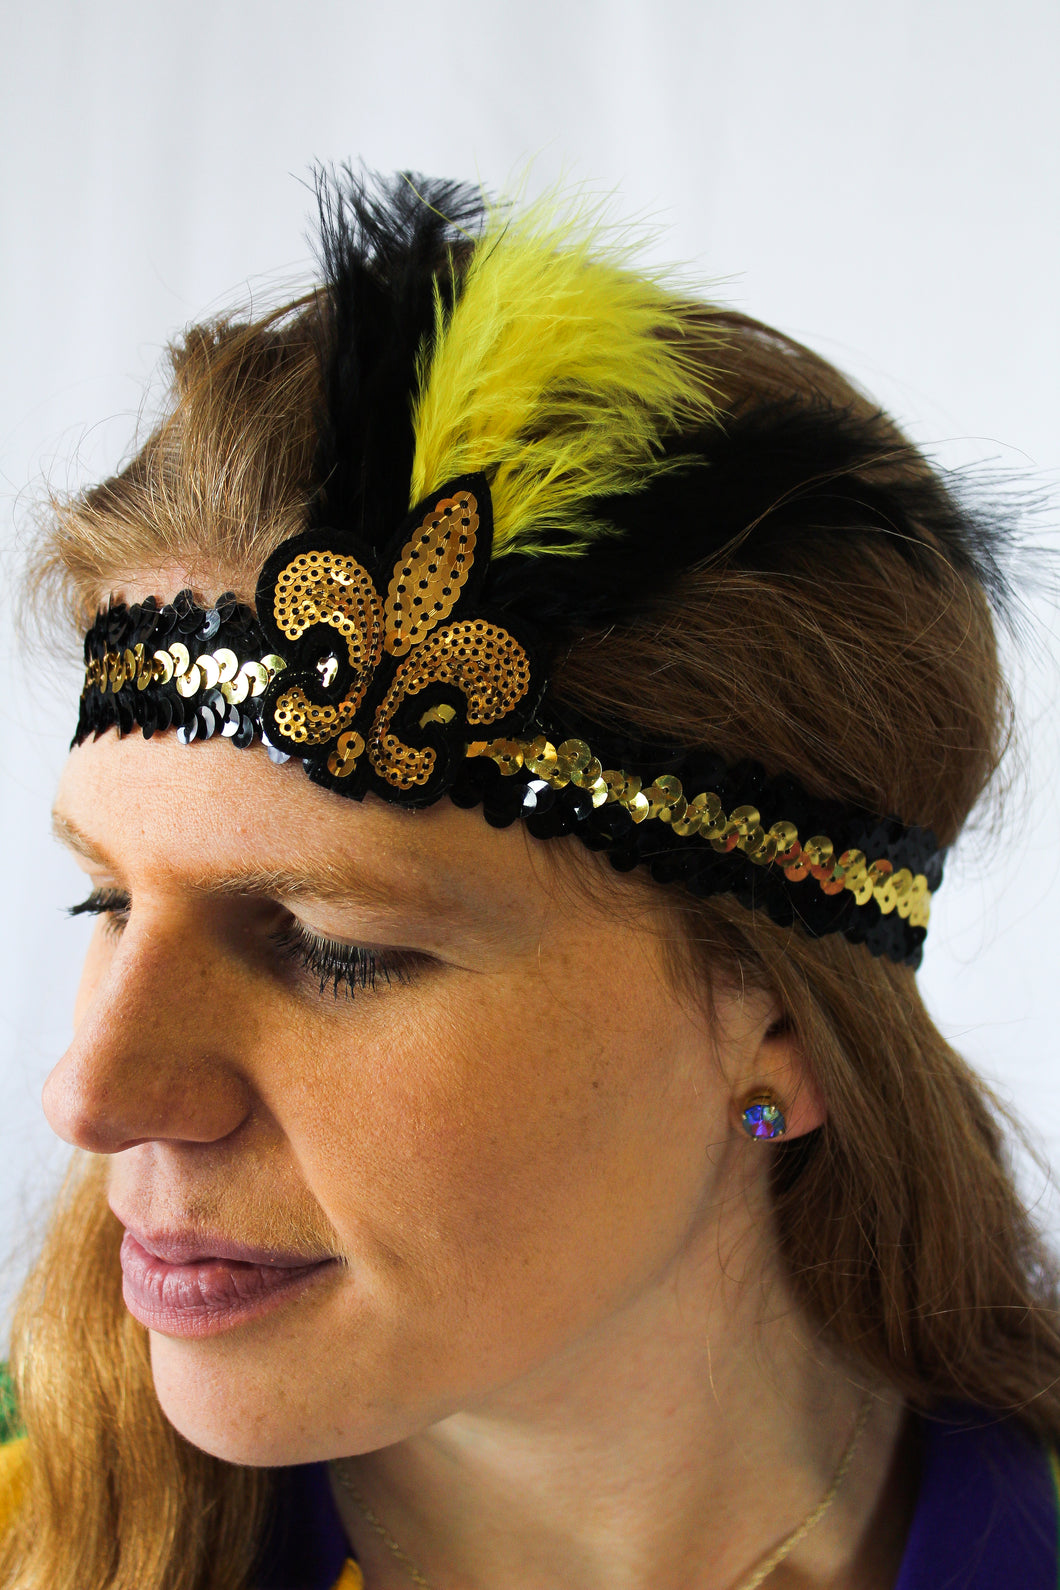 Black and Gold Glitter Fleur De Lis Hair Tie Bracelet – NolaCajun